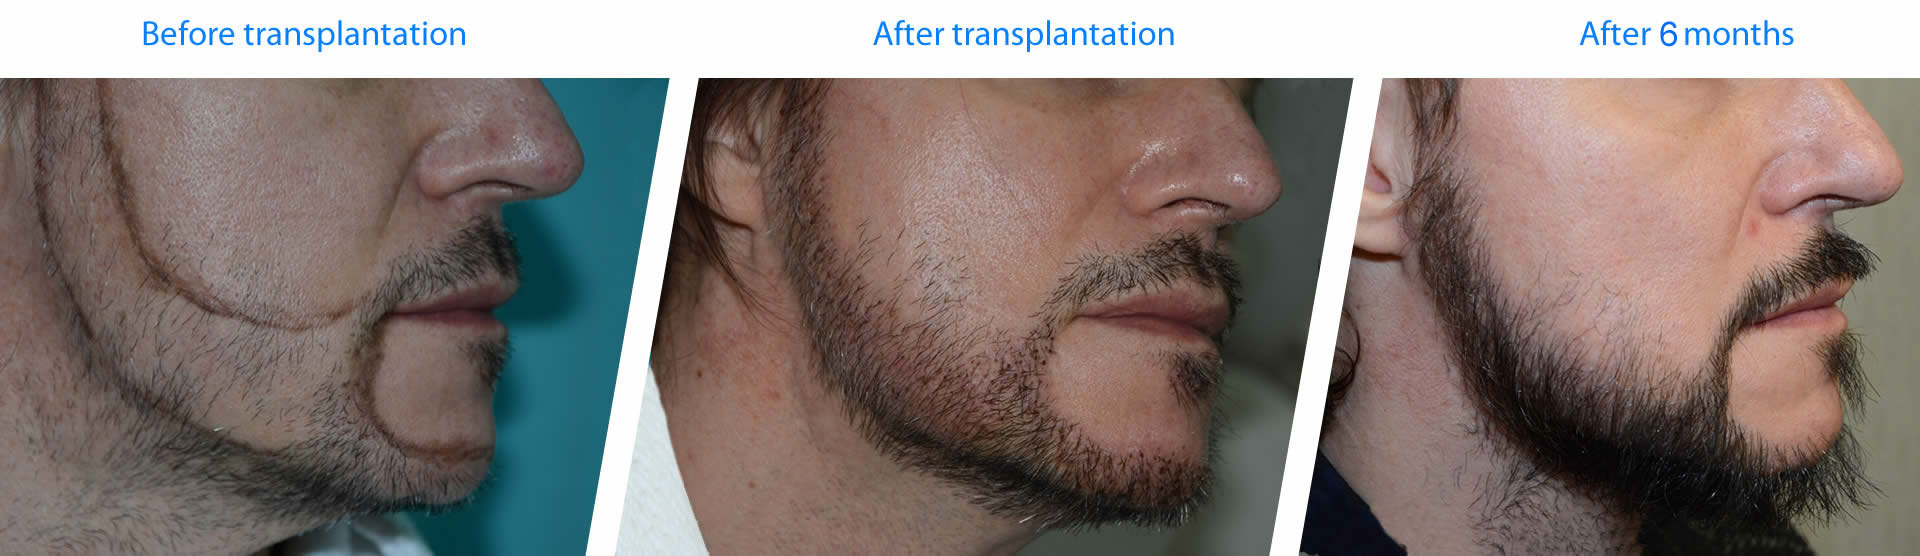 ejemplos y resultados de trasplante de barba